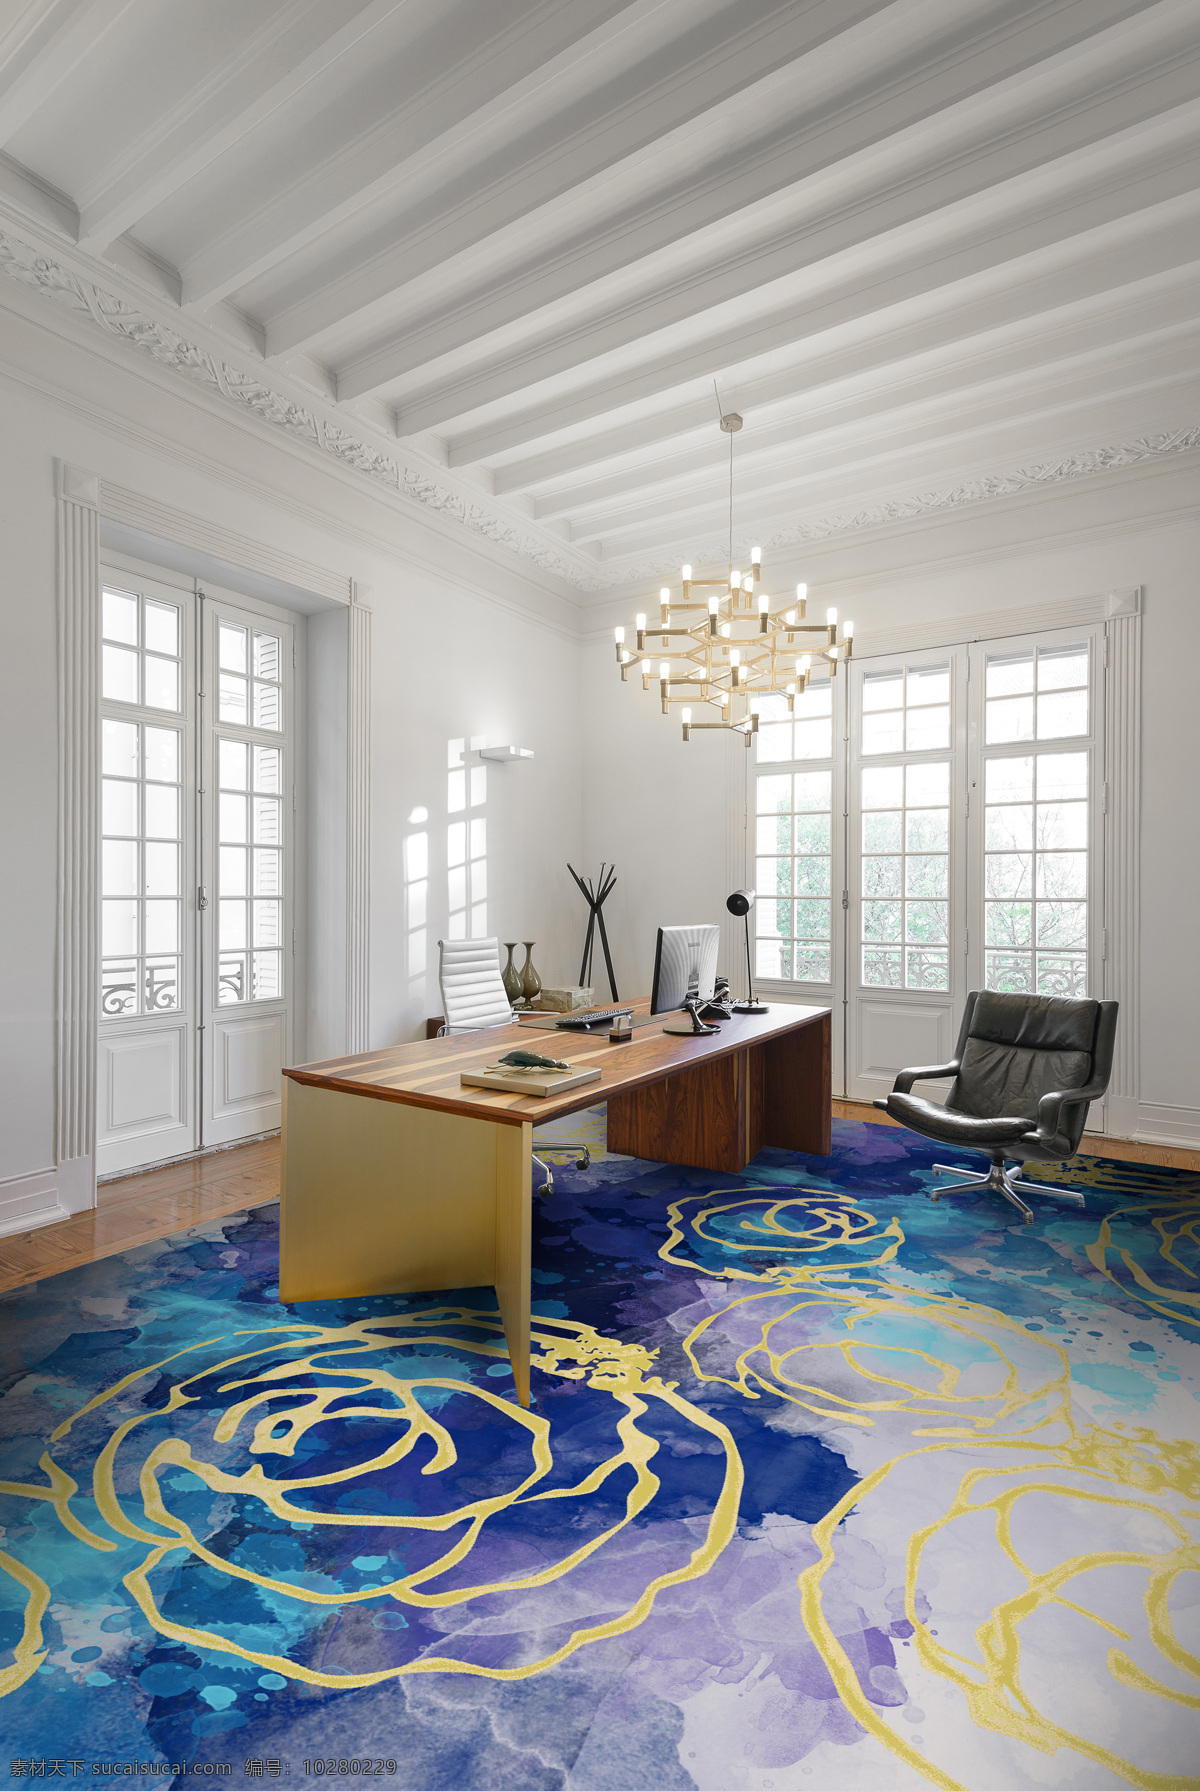 经理办公室 地毯图案 水墨 泼墨 地毯设计 设计方案 现代时尚 酒店效果图